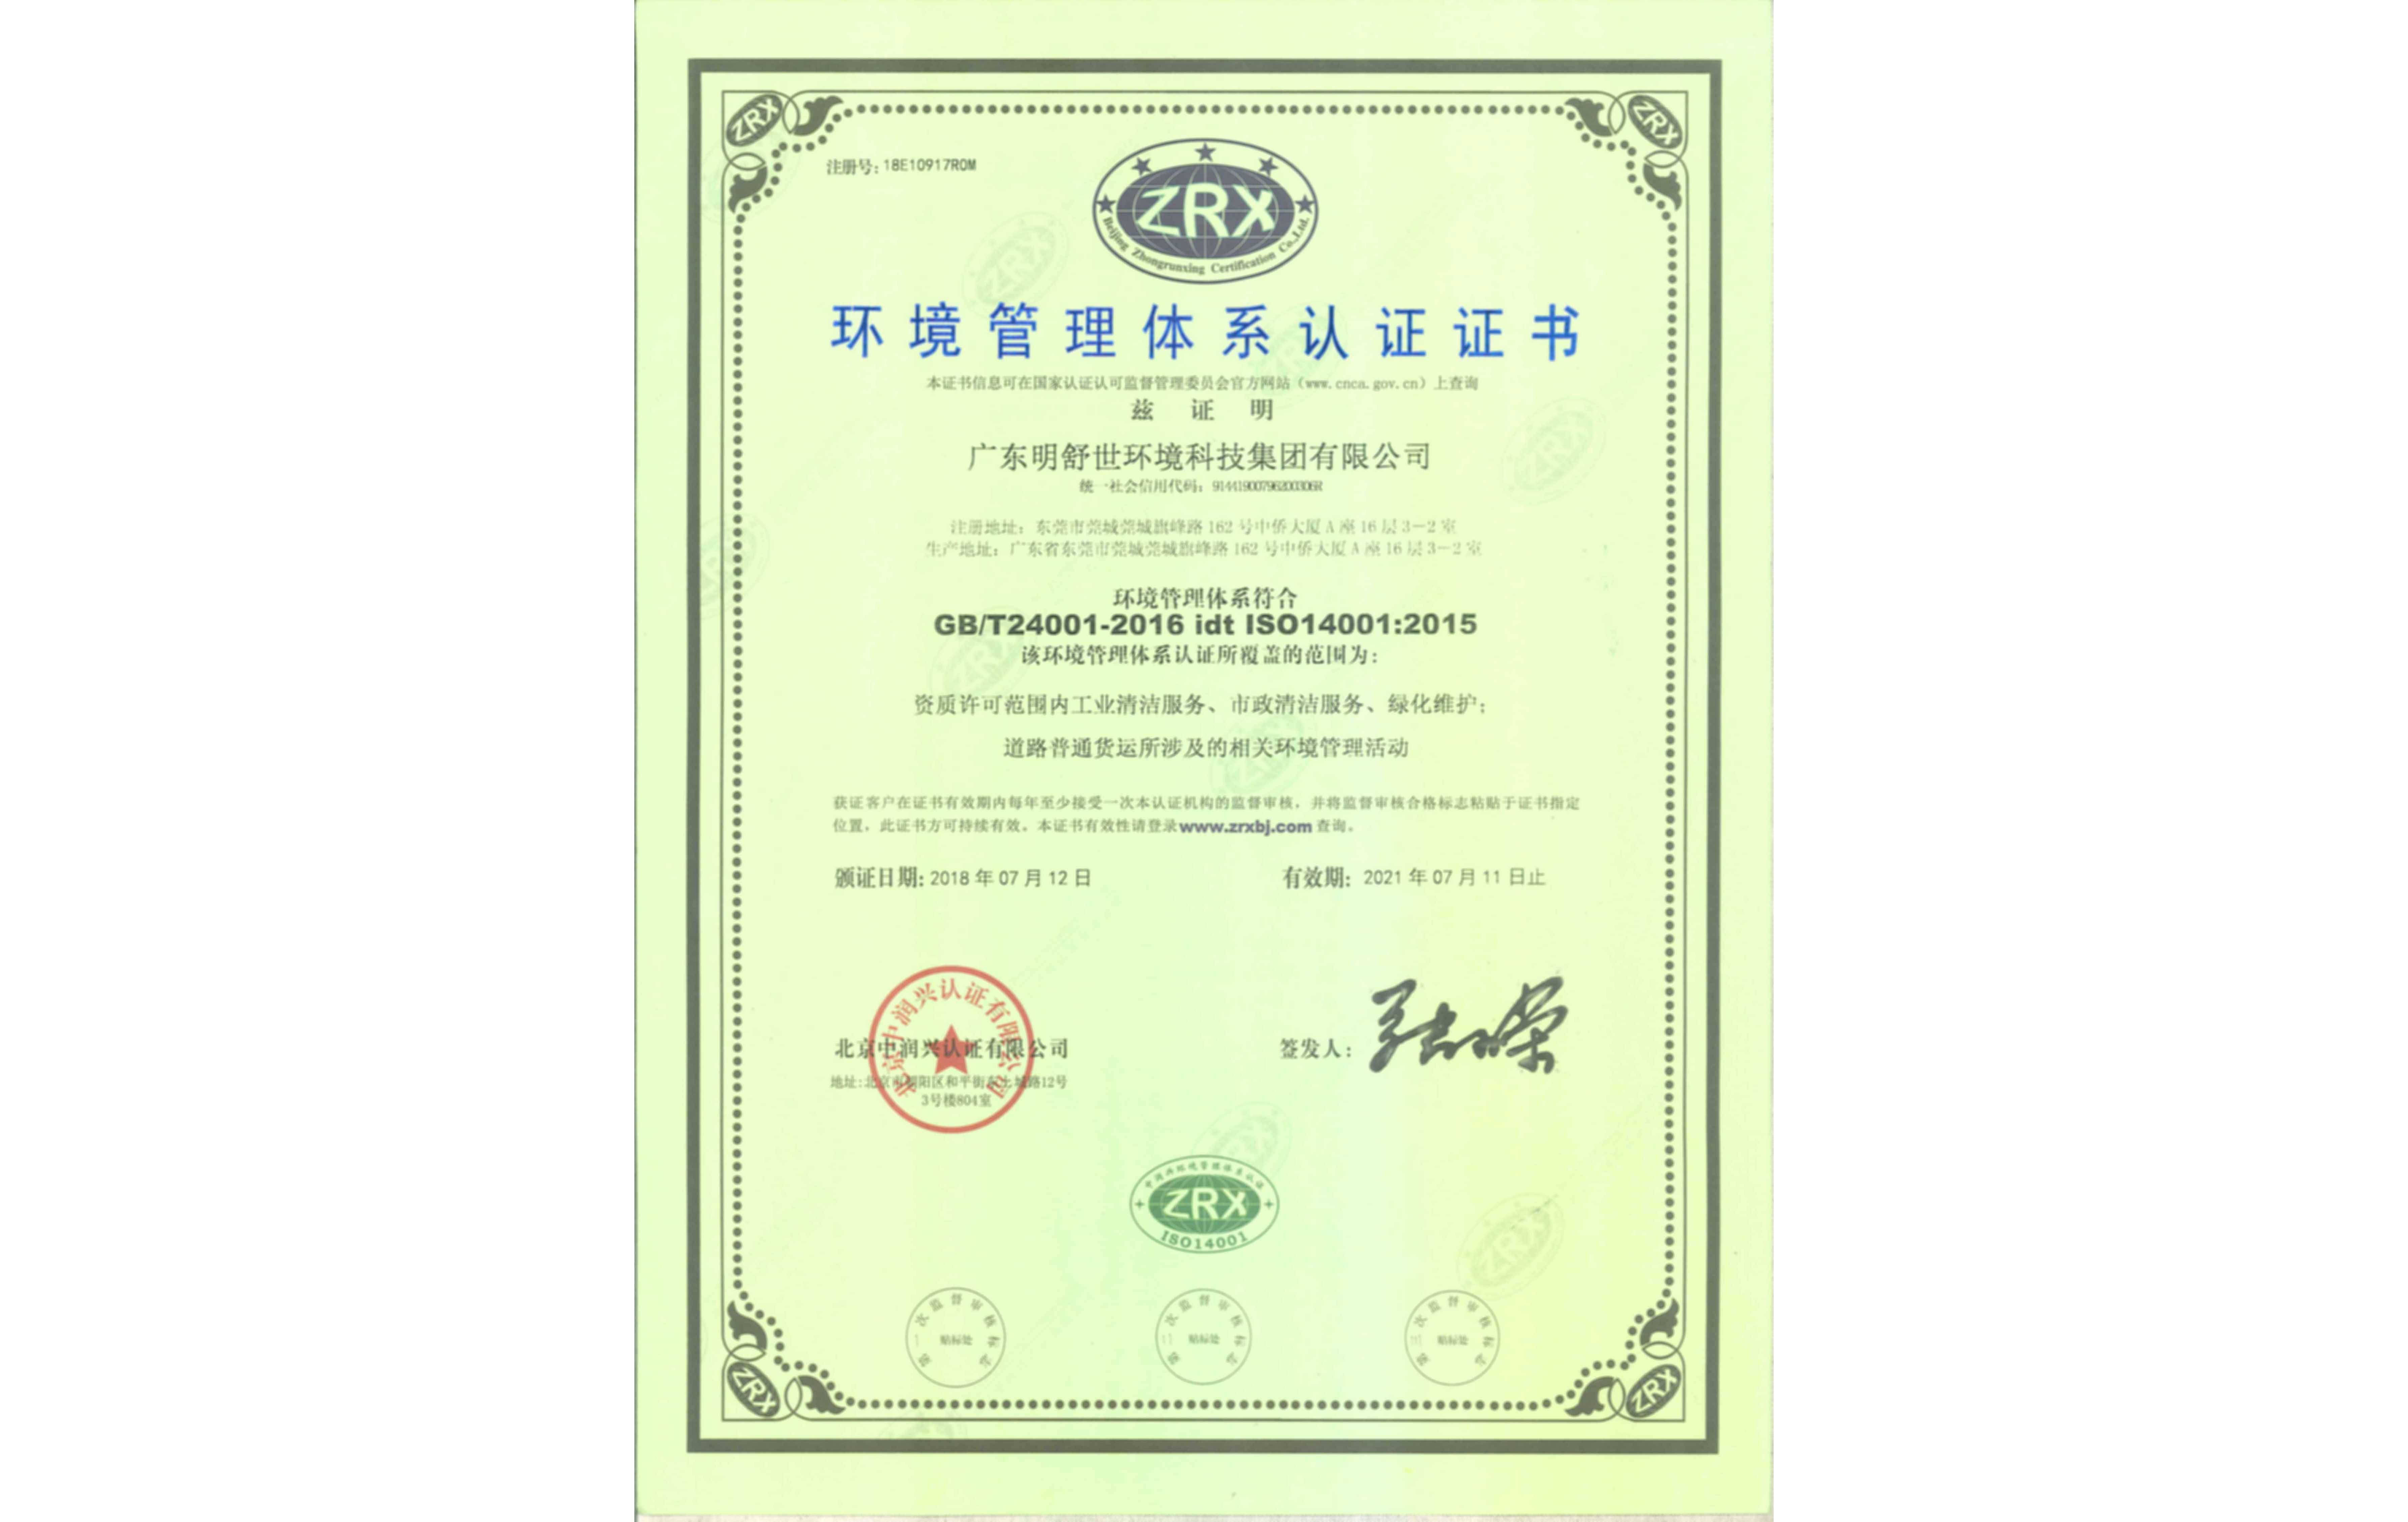 ISO14000環境(jing)管理(li)體系(xi)中文